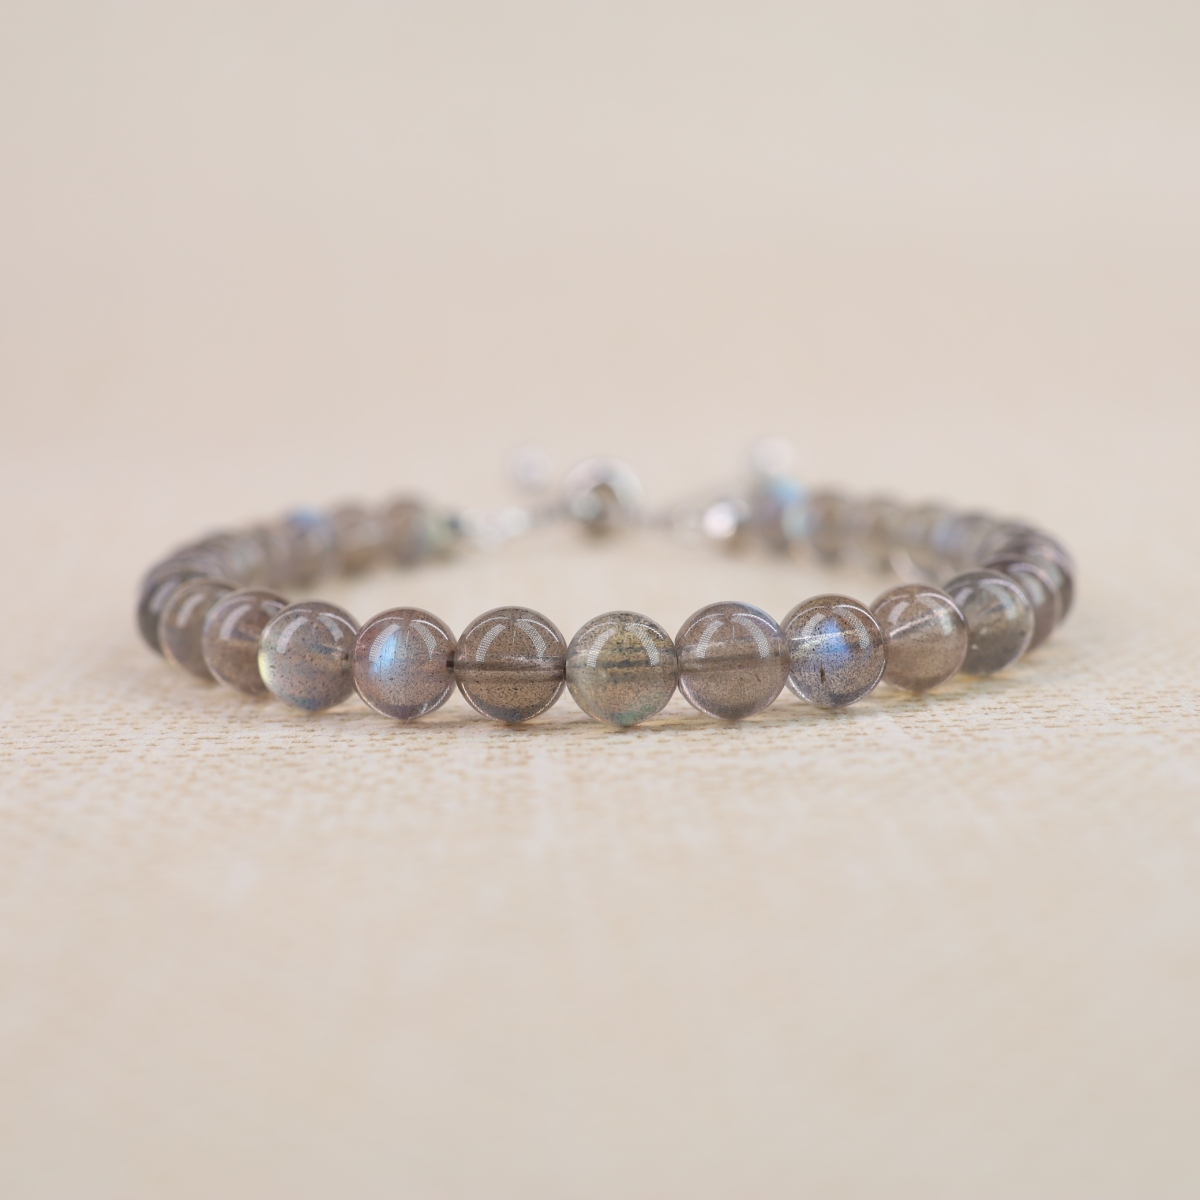 COAI 925 Sterling Silver Labradorite Stone Slider Bracelet for Women